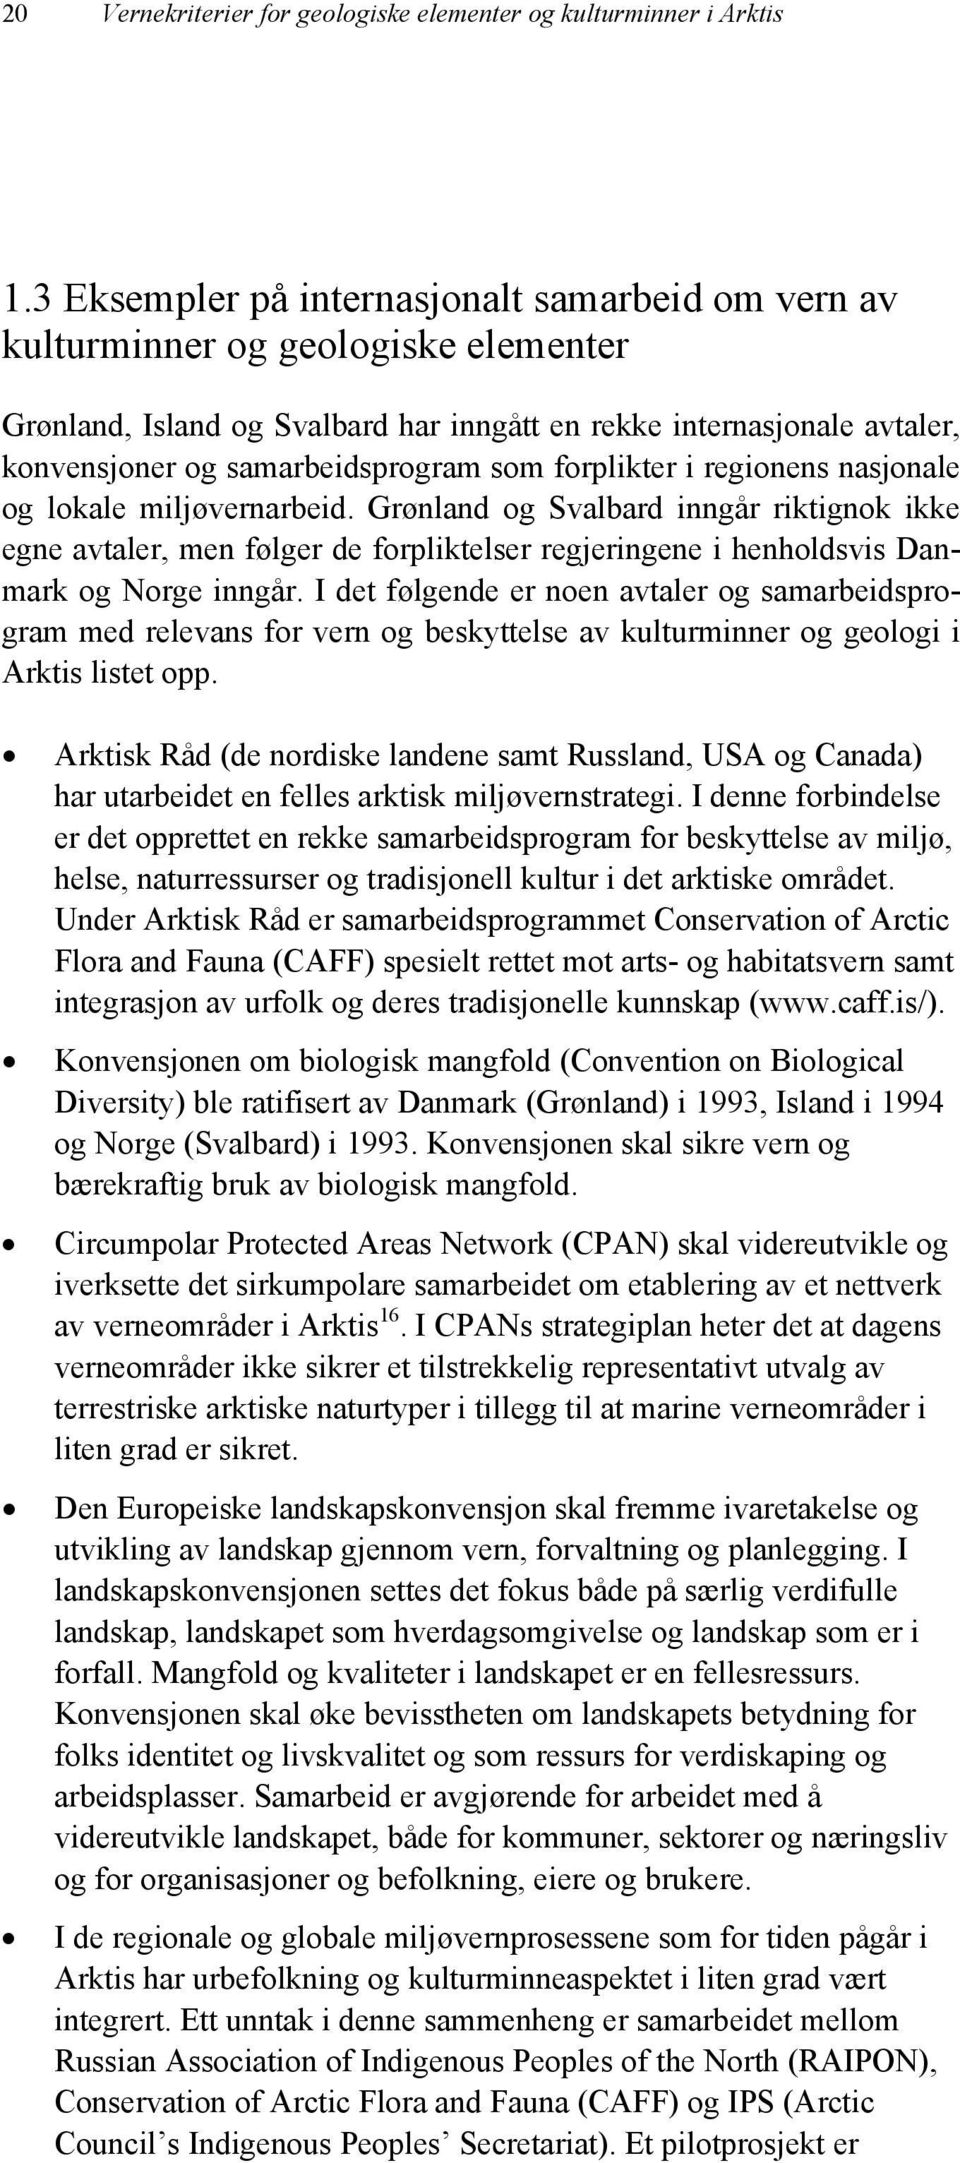 forplikter i regionens nasjonale og lokale miljøvernarbeid. Grønland og Svalbard inngår riktignok ikke egne avtaler, men følger de forpliktelser regjeringene i henholdsvis Danmark og Norge inngår.